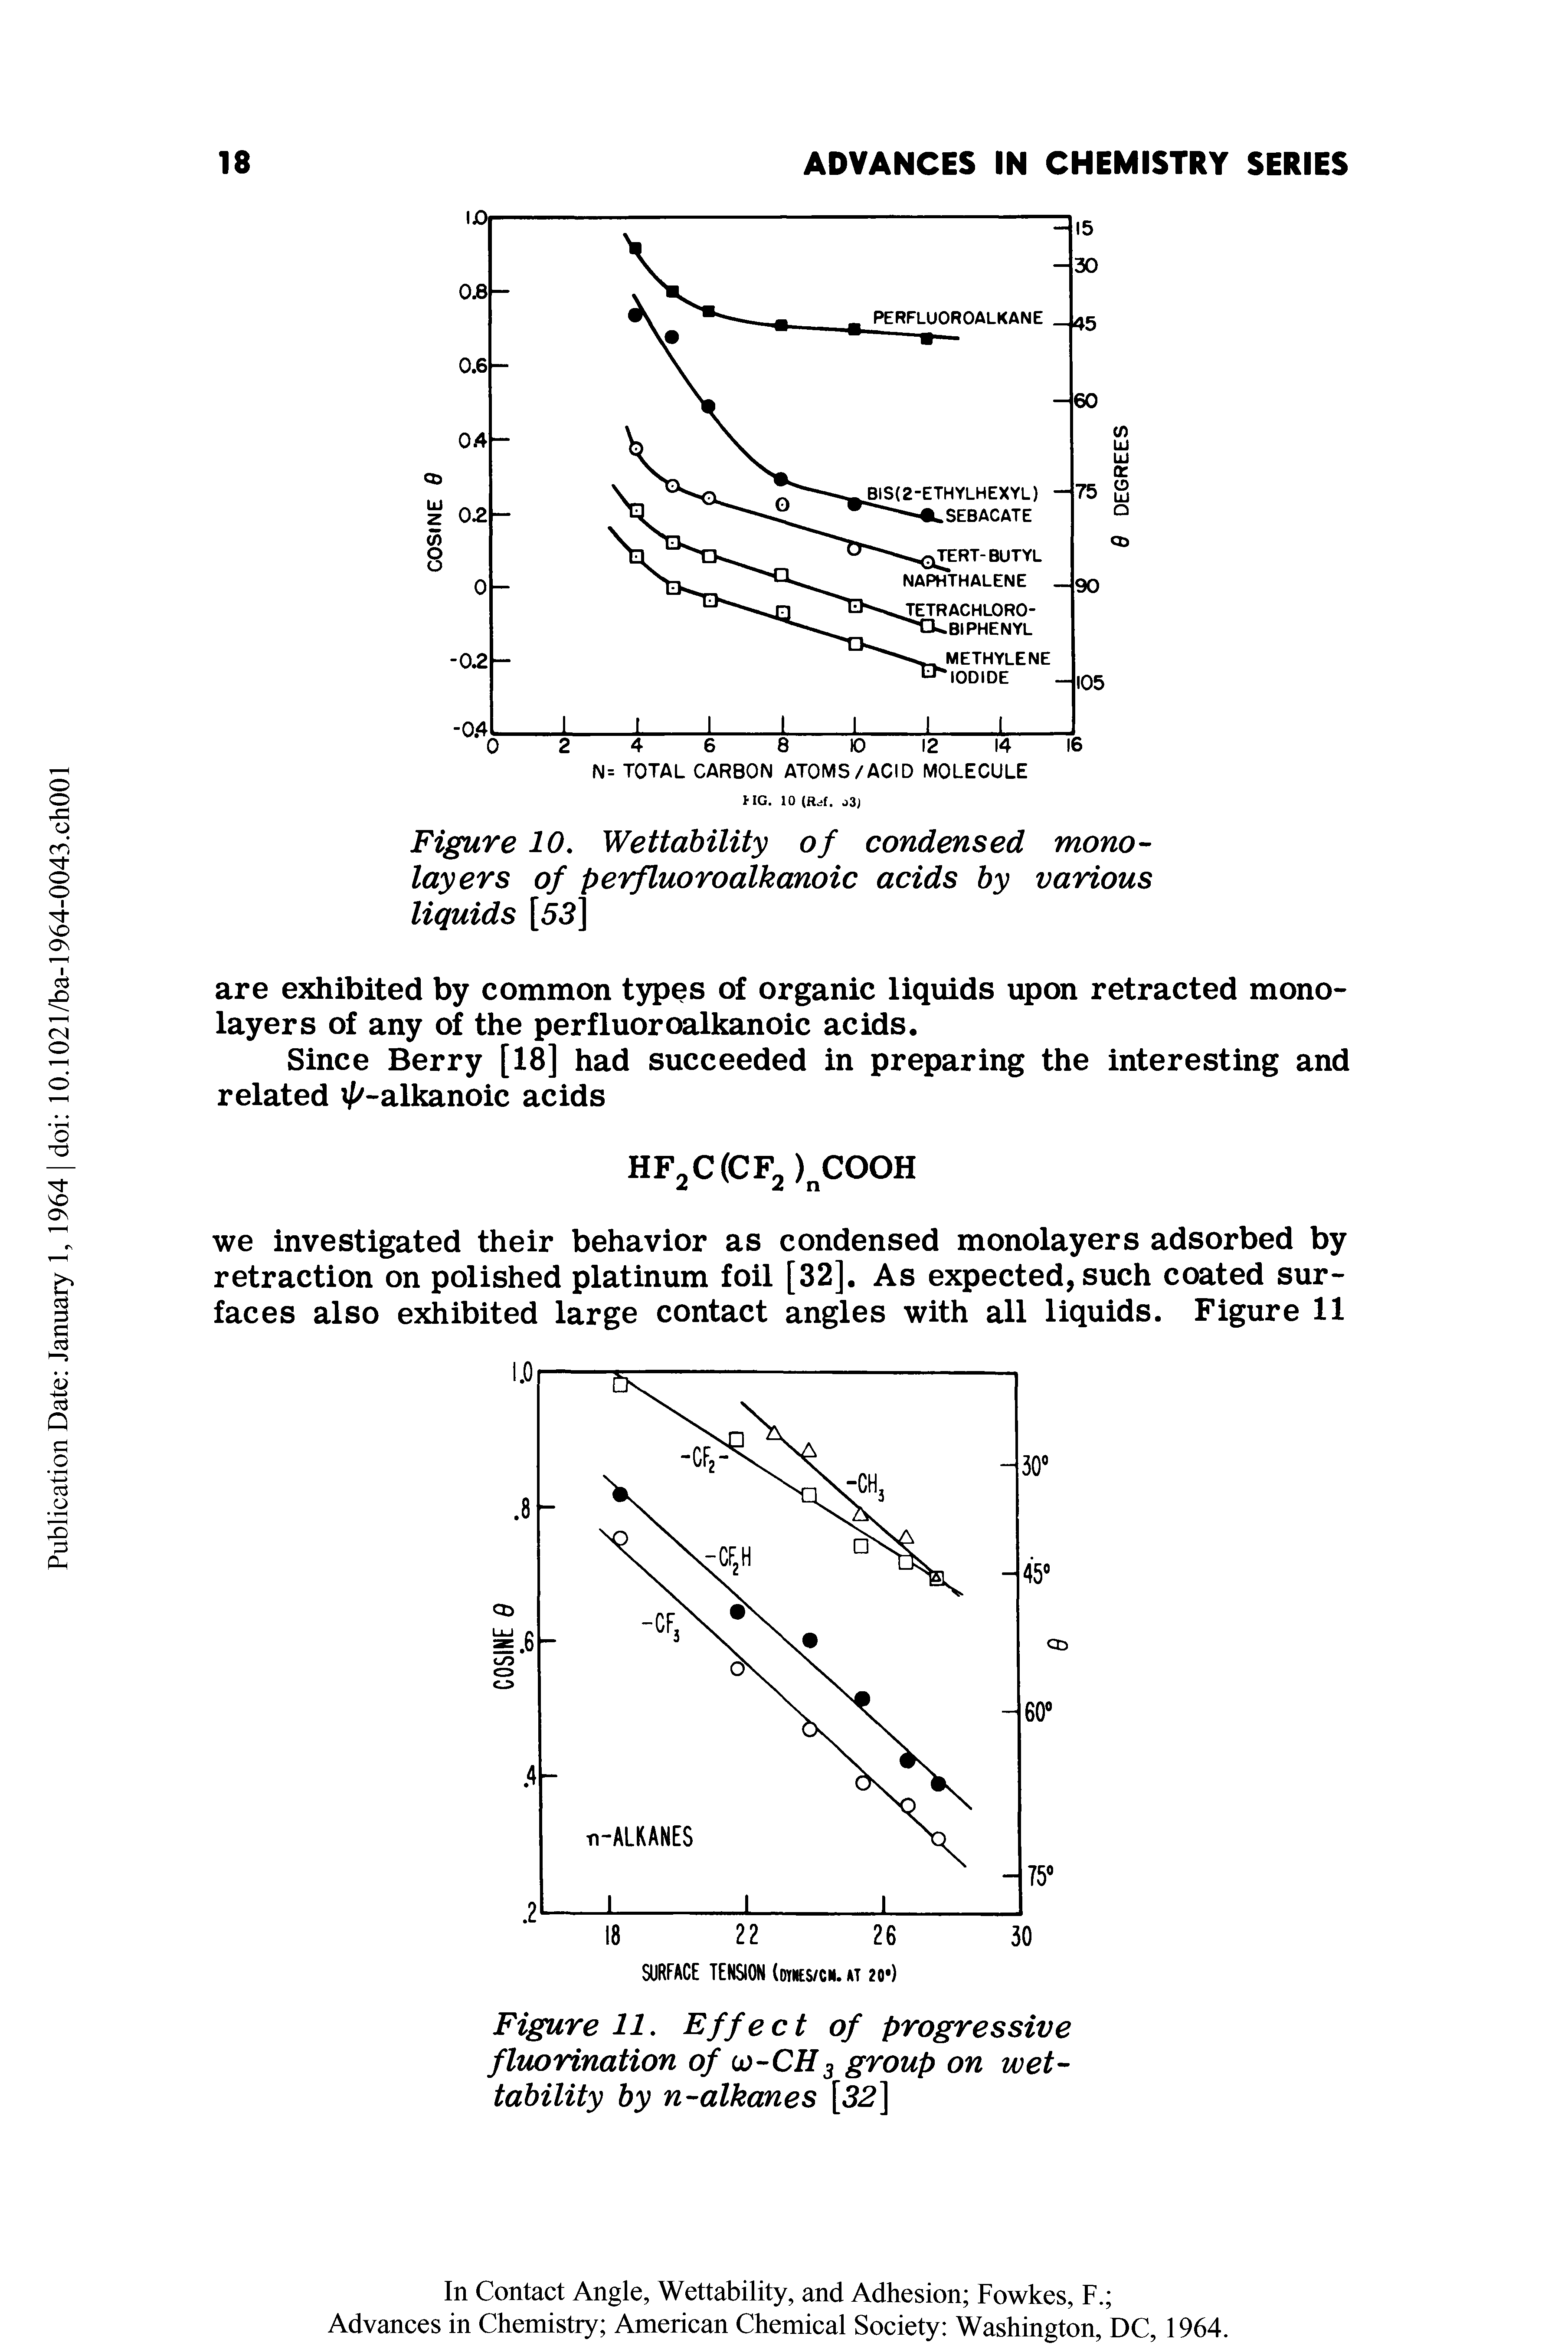 Figure 11. Effect of progressive fluorination of oj-CH3 group on wettability by n-alkanes [32]...